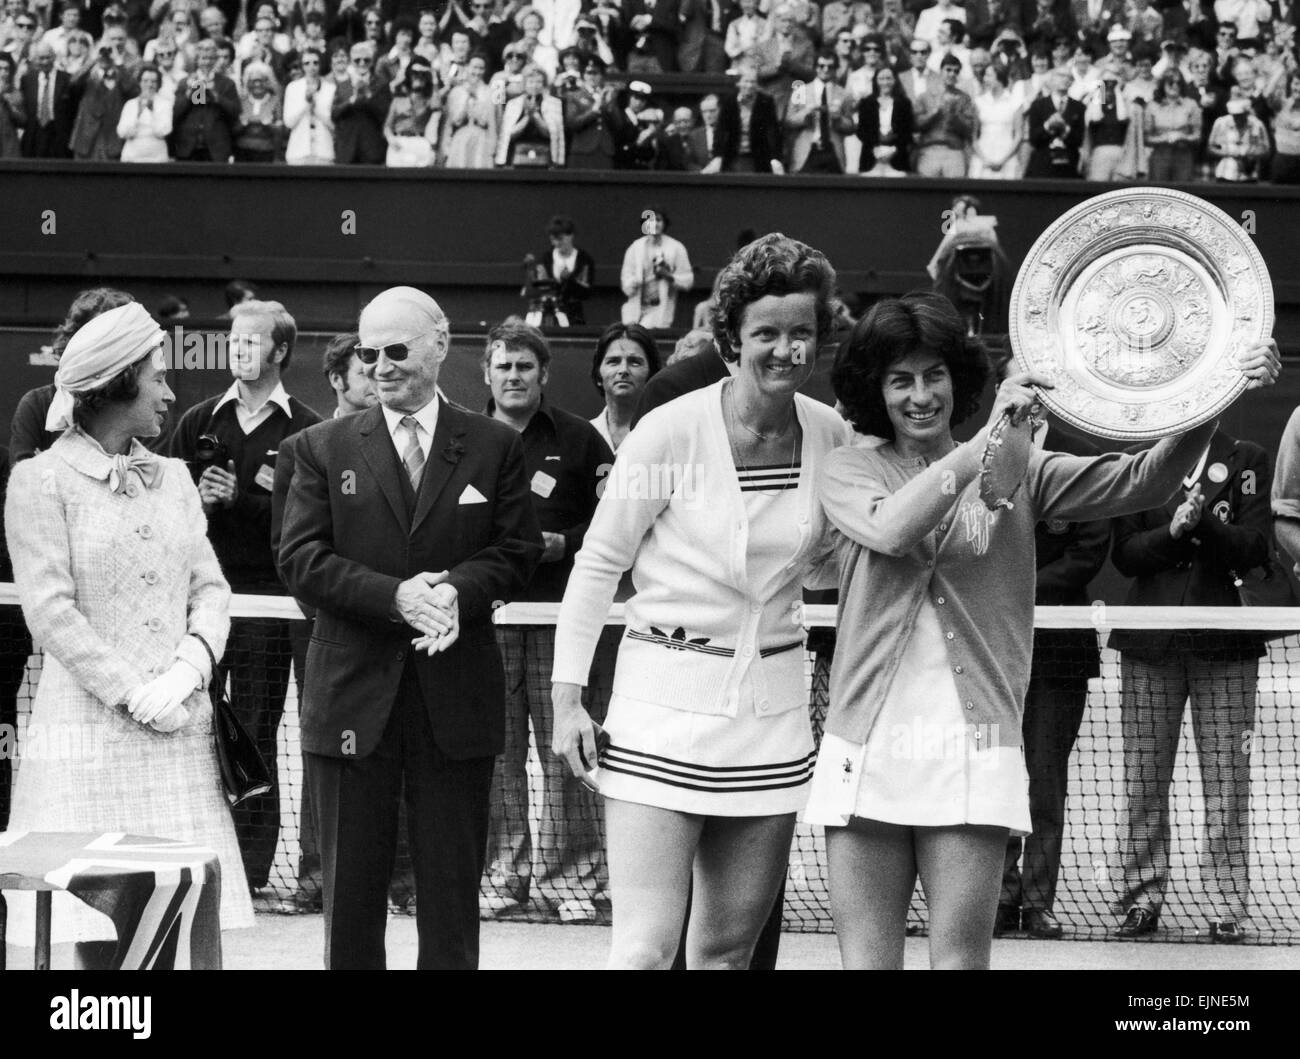 Estampillage 14 000 fans ont applaudi à la victoire de Virginia Wade dans son combat contre la Holland's Betty cuisinière. Ginny, convaincu qu'elle gagnerait a reçu une standing ovation. "C'était comme un conte de fée", dit-elle. Il y avait tellement de bruit que je ne pouvais pas son wat la Reine dit'. Notre photo montre ; Virginia Wade avec le trophée posant avec Betty cuisinière tandis que la Reine s'entretient avec un officiel de Wimbledon à l'arrière-plan. 4 Juillet 1977 Banque D'Images